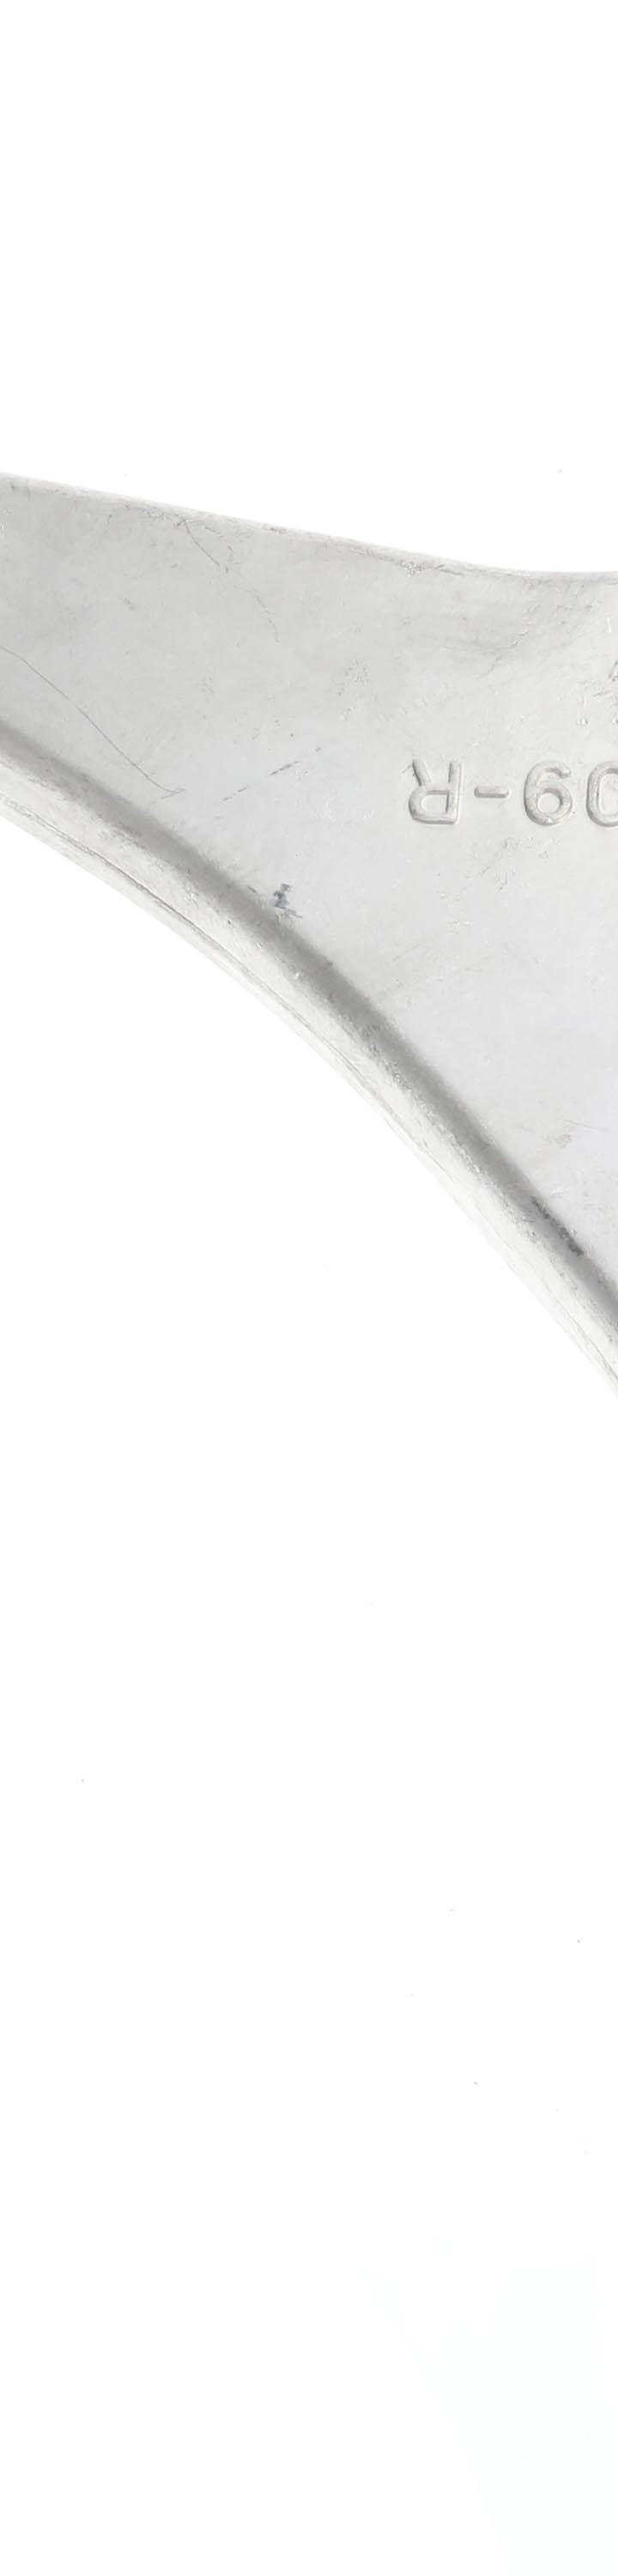 カバーライト ベントレー コンチネンタル フライングスパー 対応用 5層構造 ボディカバー (裏起毛付) カバーランド - 9